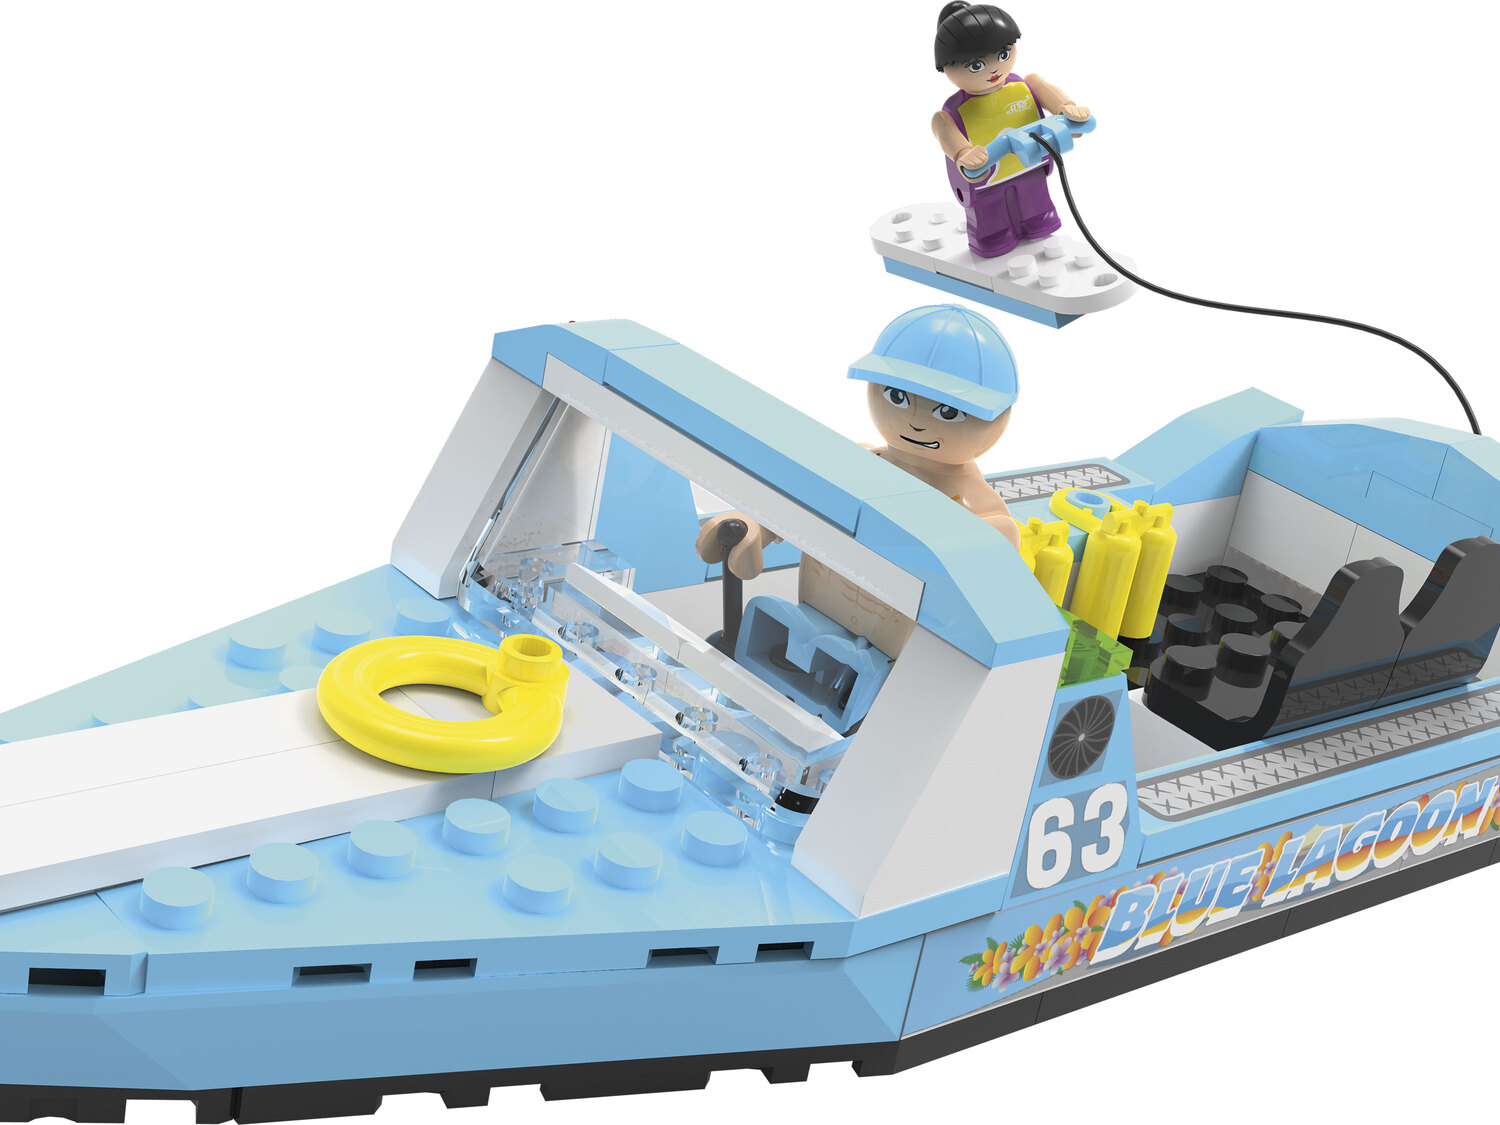 Minizestaw klocków Playtive, cena 6,99 PLN 
łódź do nart wodnych 
- 87 części
Opis

- ...